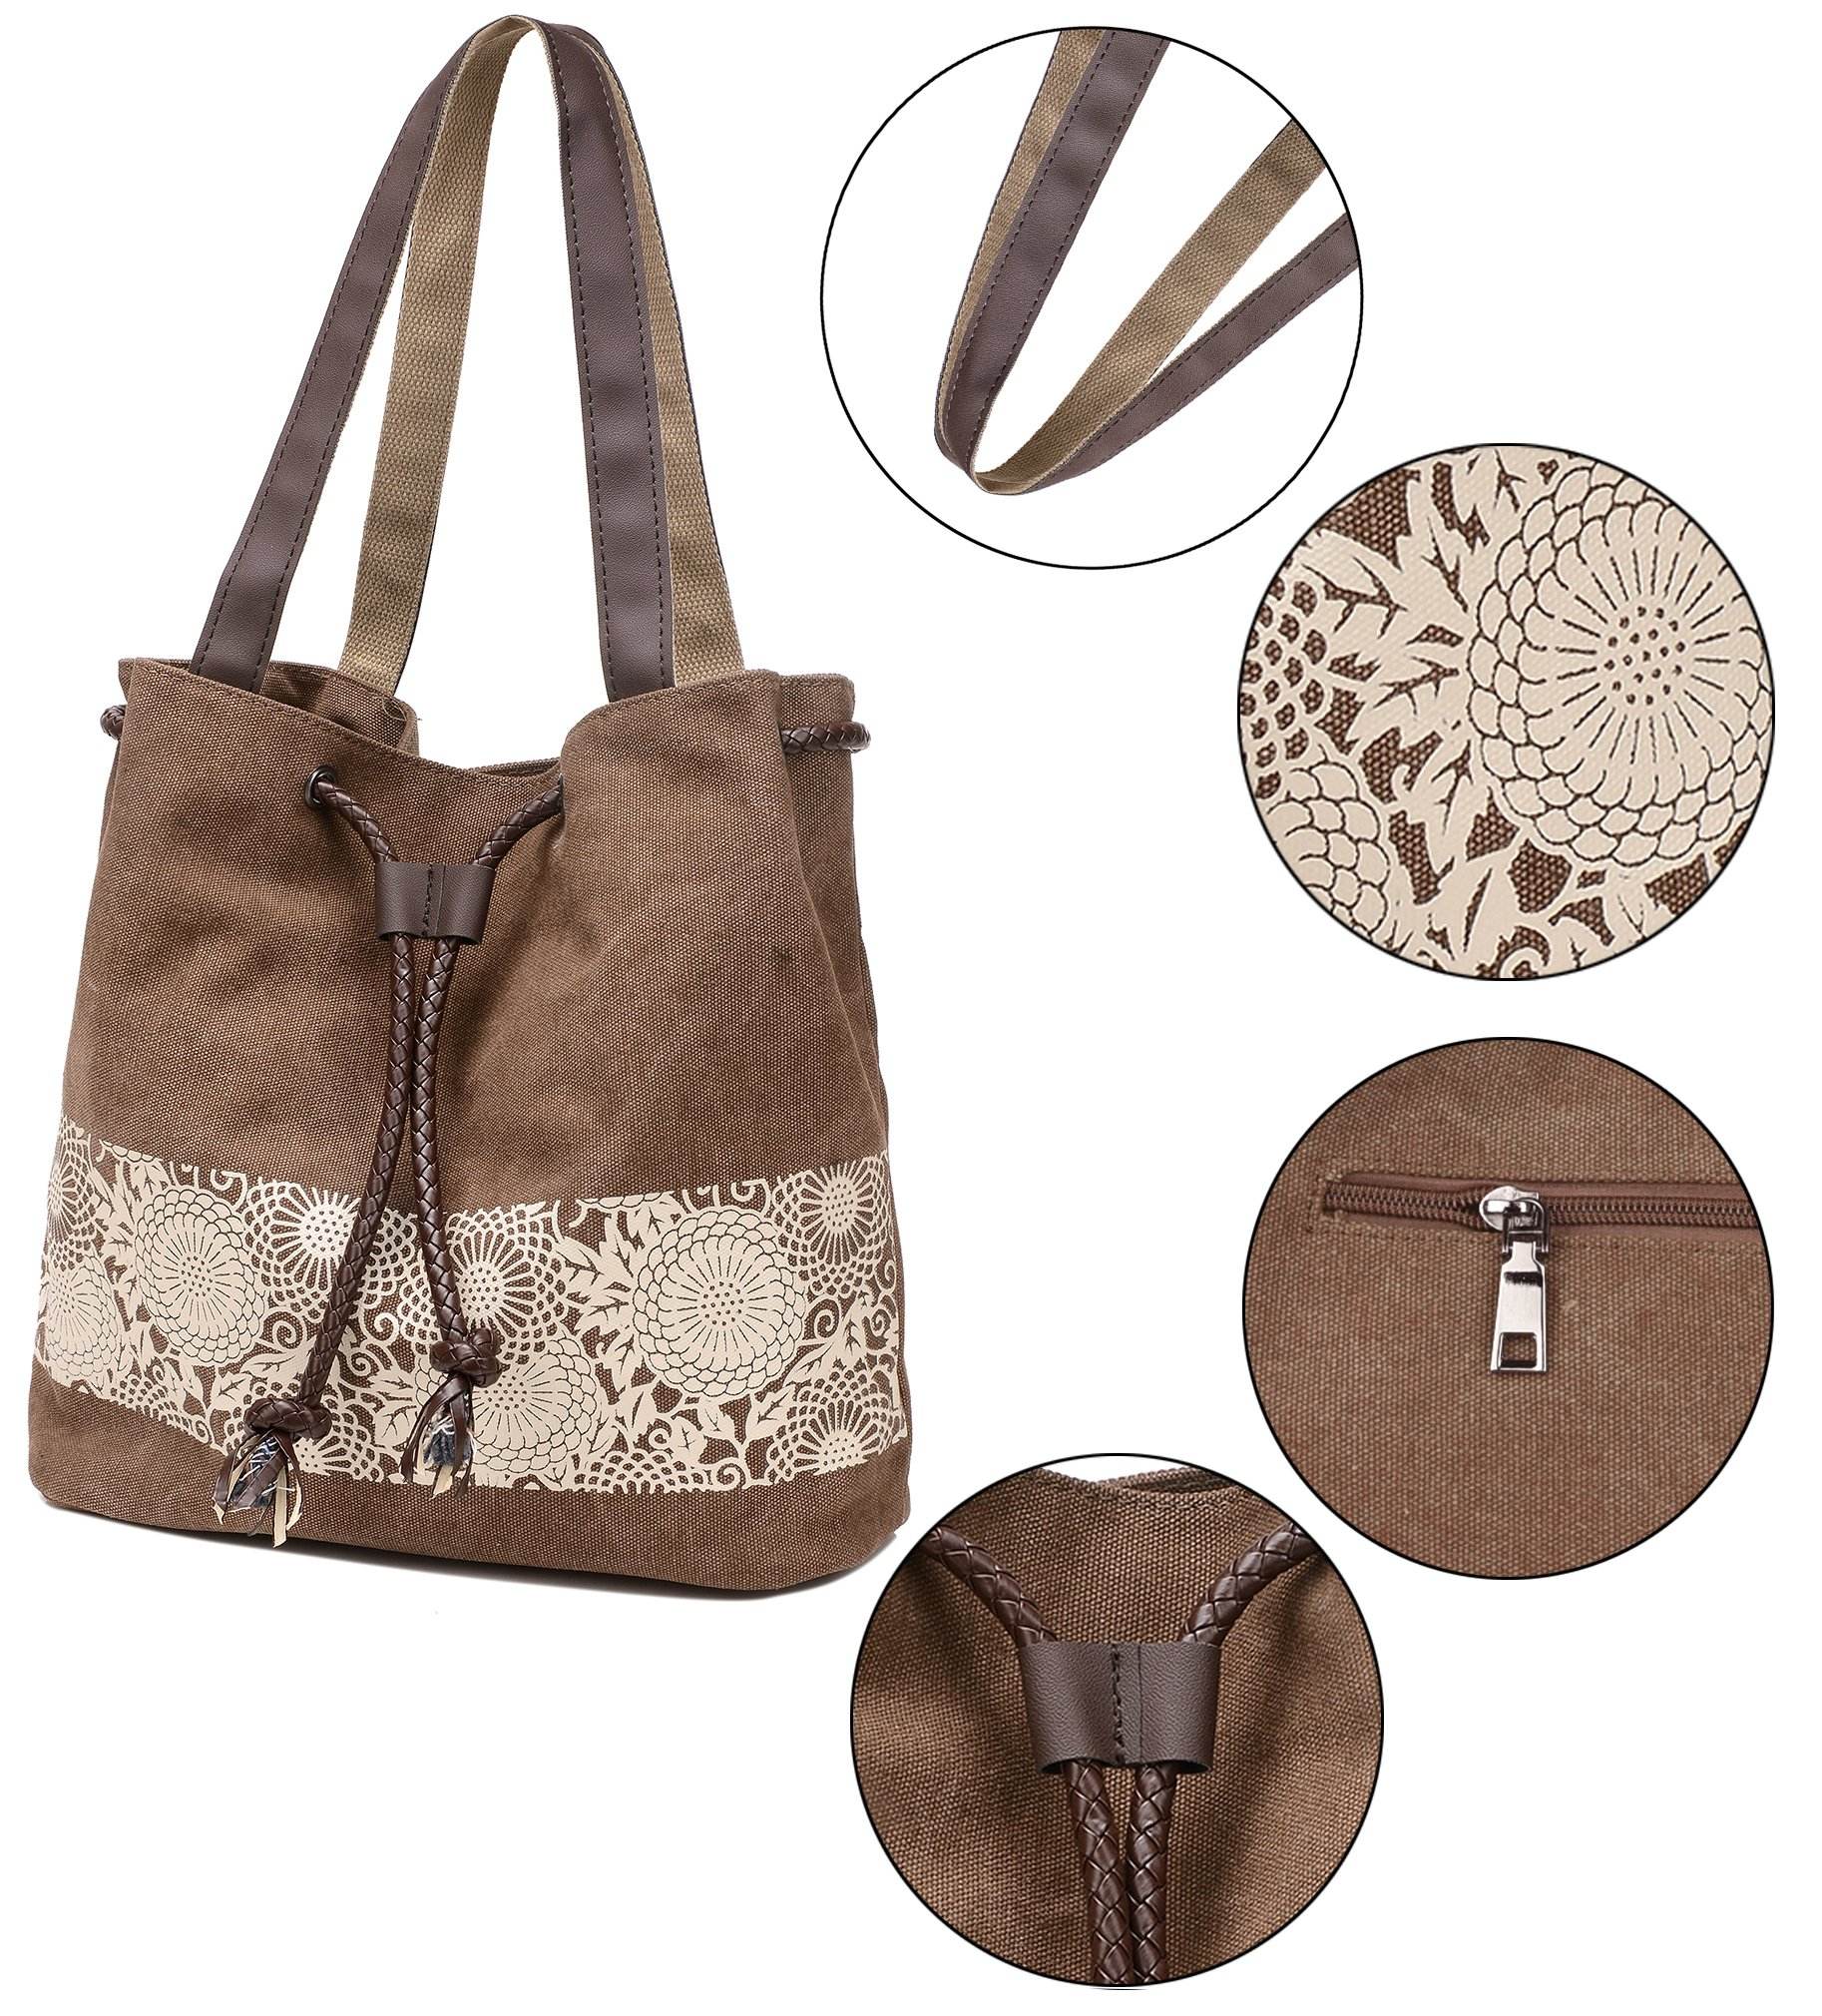 Amazon's Hot Sales Canvas Handbag Women Shoulder Strap Drawstring Bag With Printed Shopping Bag